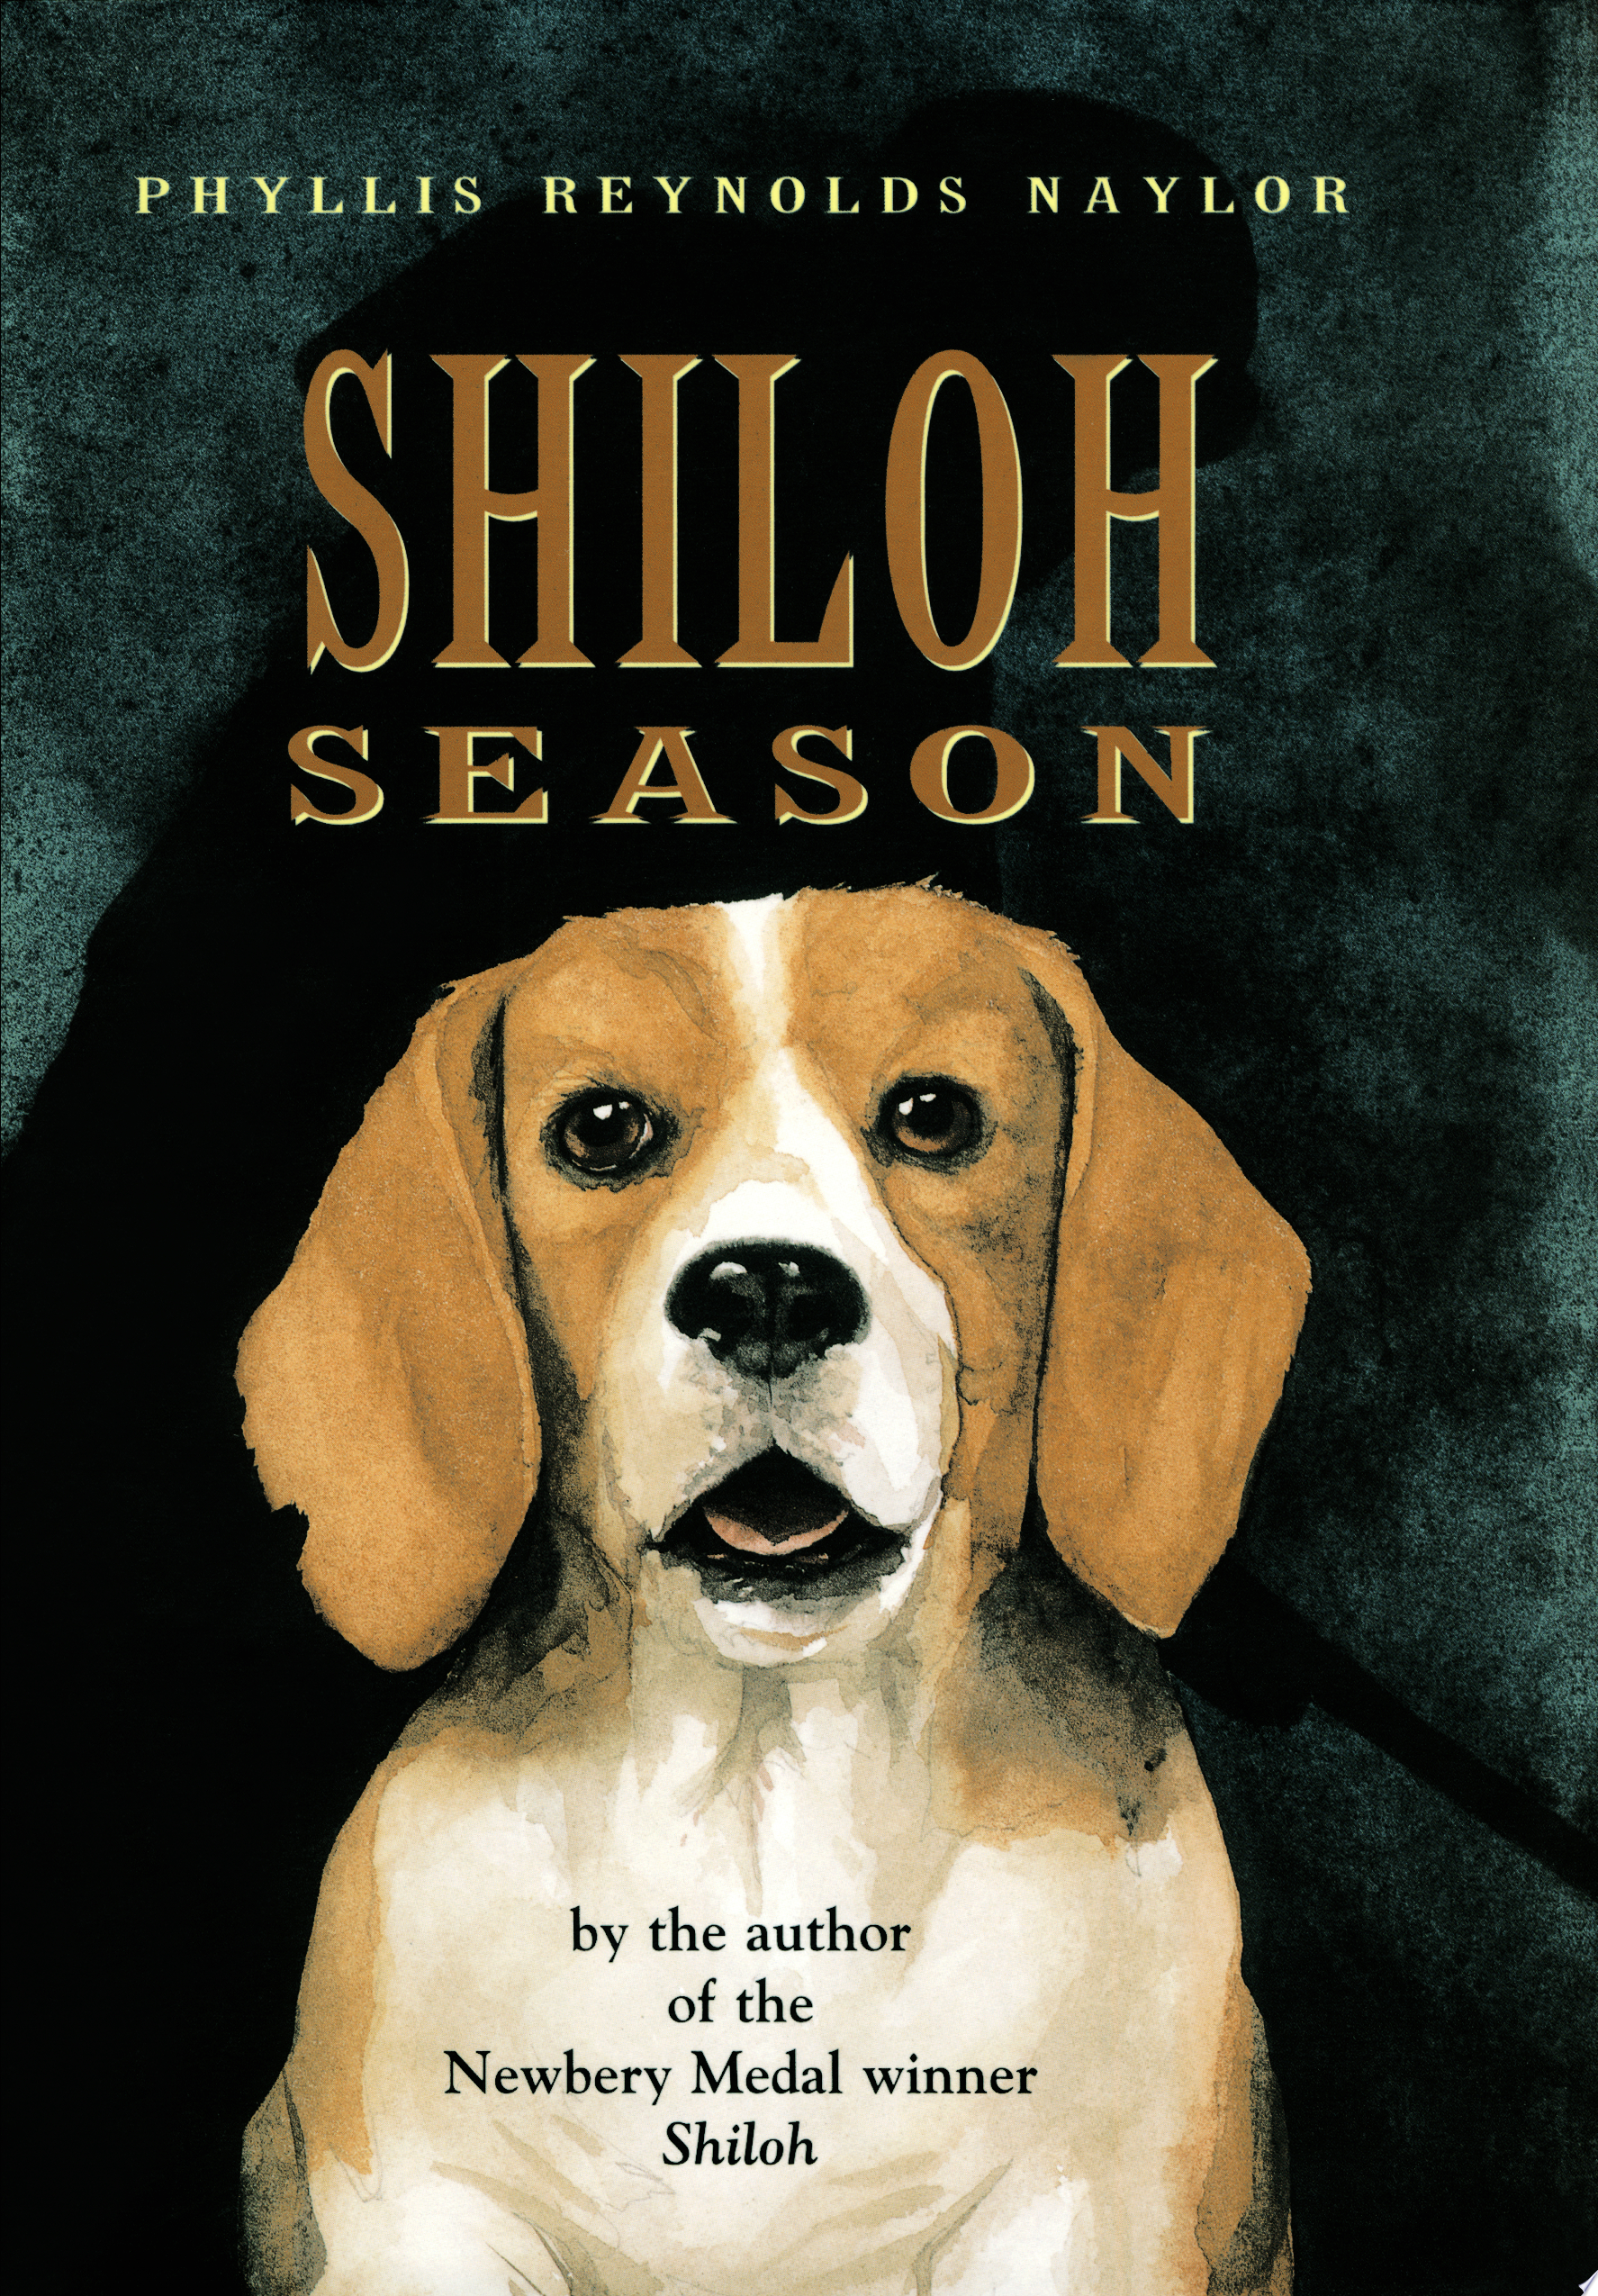 Image for "Shiloh Season"